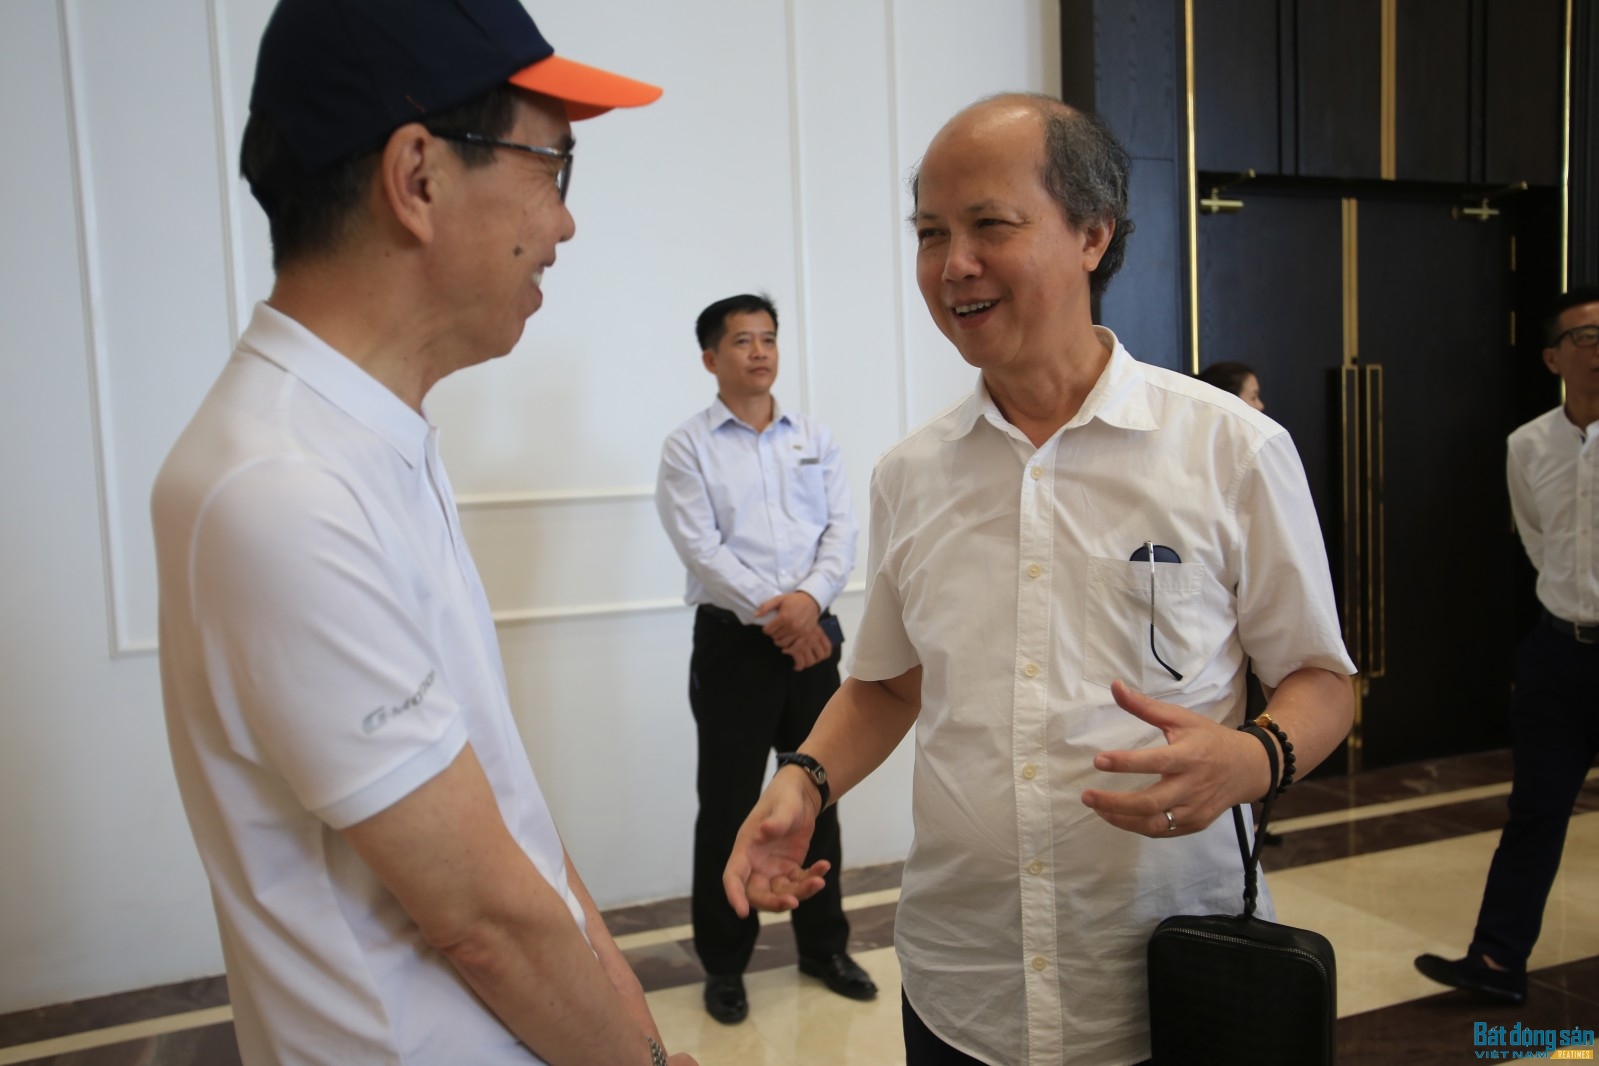 Chủ tịch VNREA Nguyễn Trần Nam vui vẻ trò chuyện cùng vị khách trong đoàn quốc tế